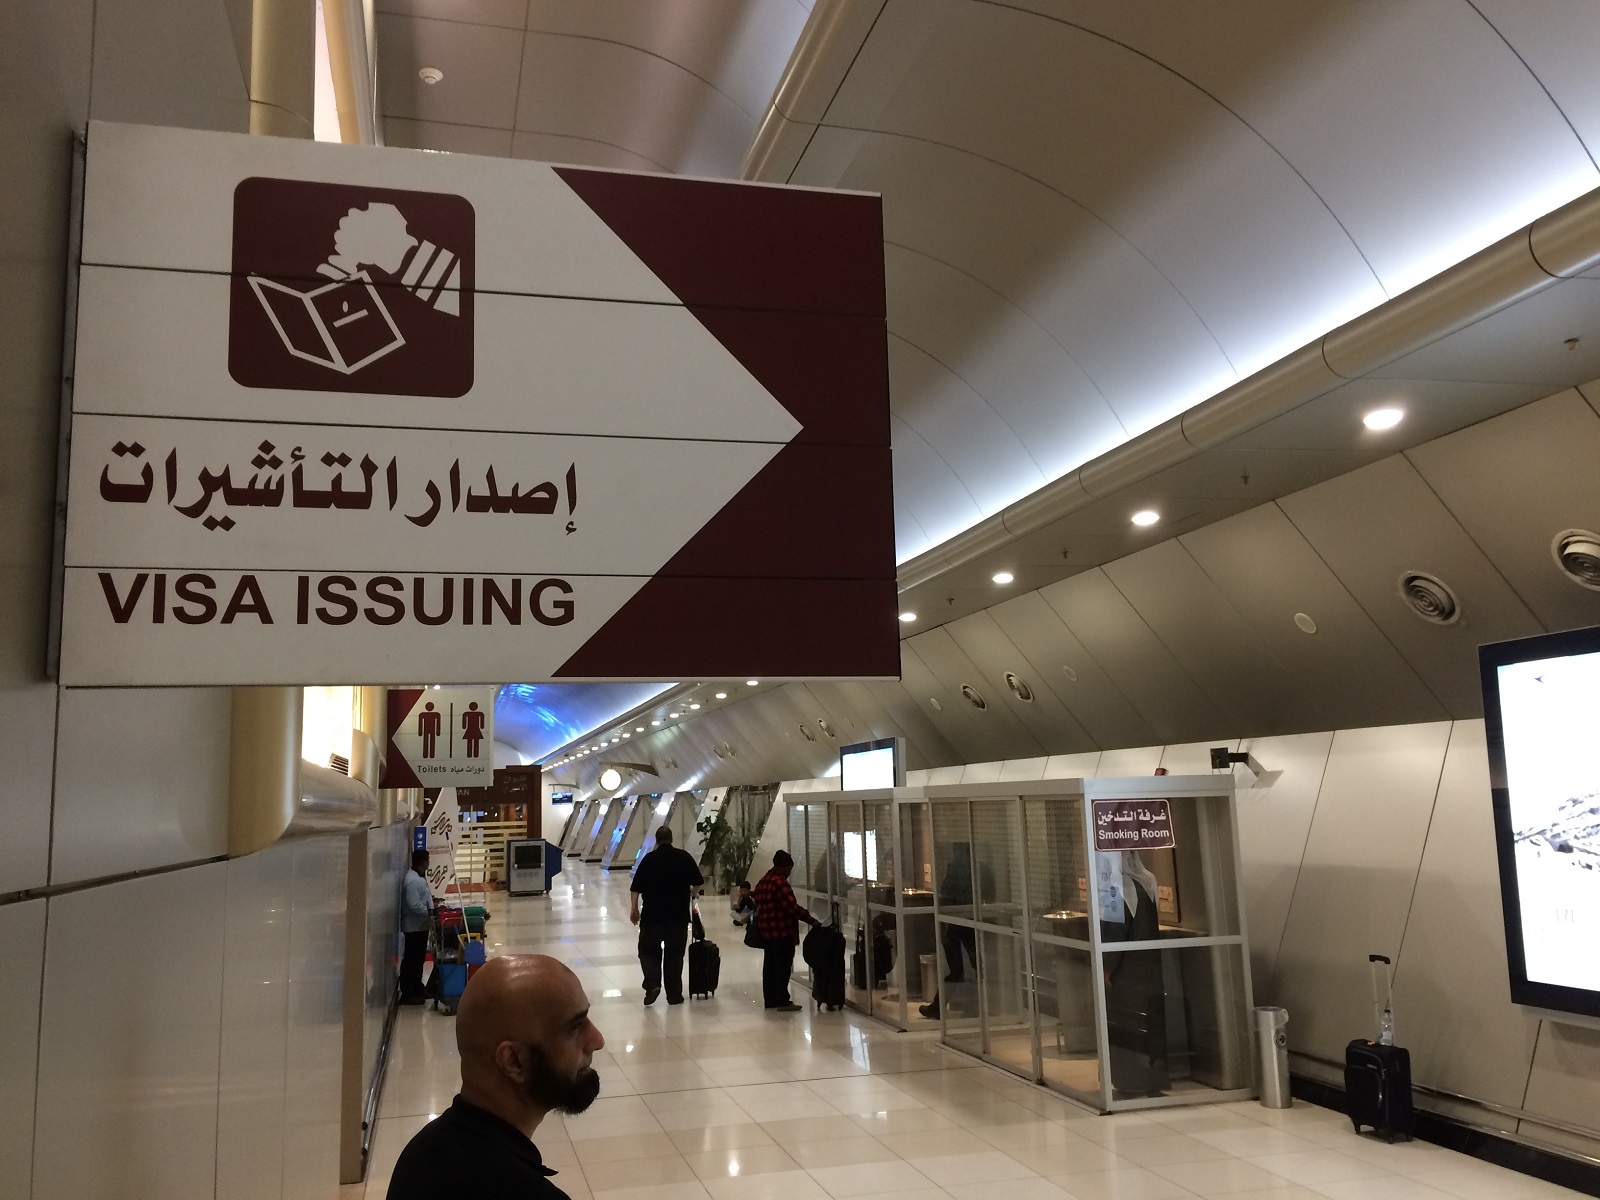 Kuvajt, Bahrajn, Katar, Spojené arabské emiráty, Omán – cestovateľské rady, tipy a itinerár